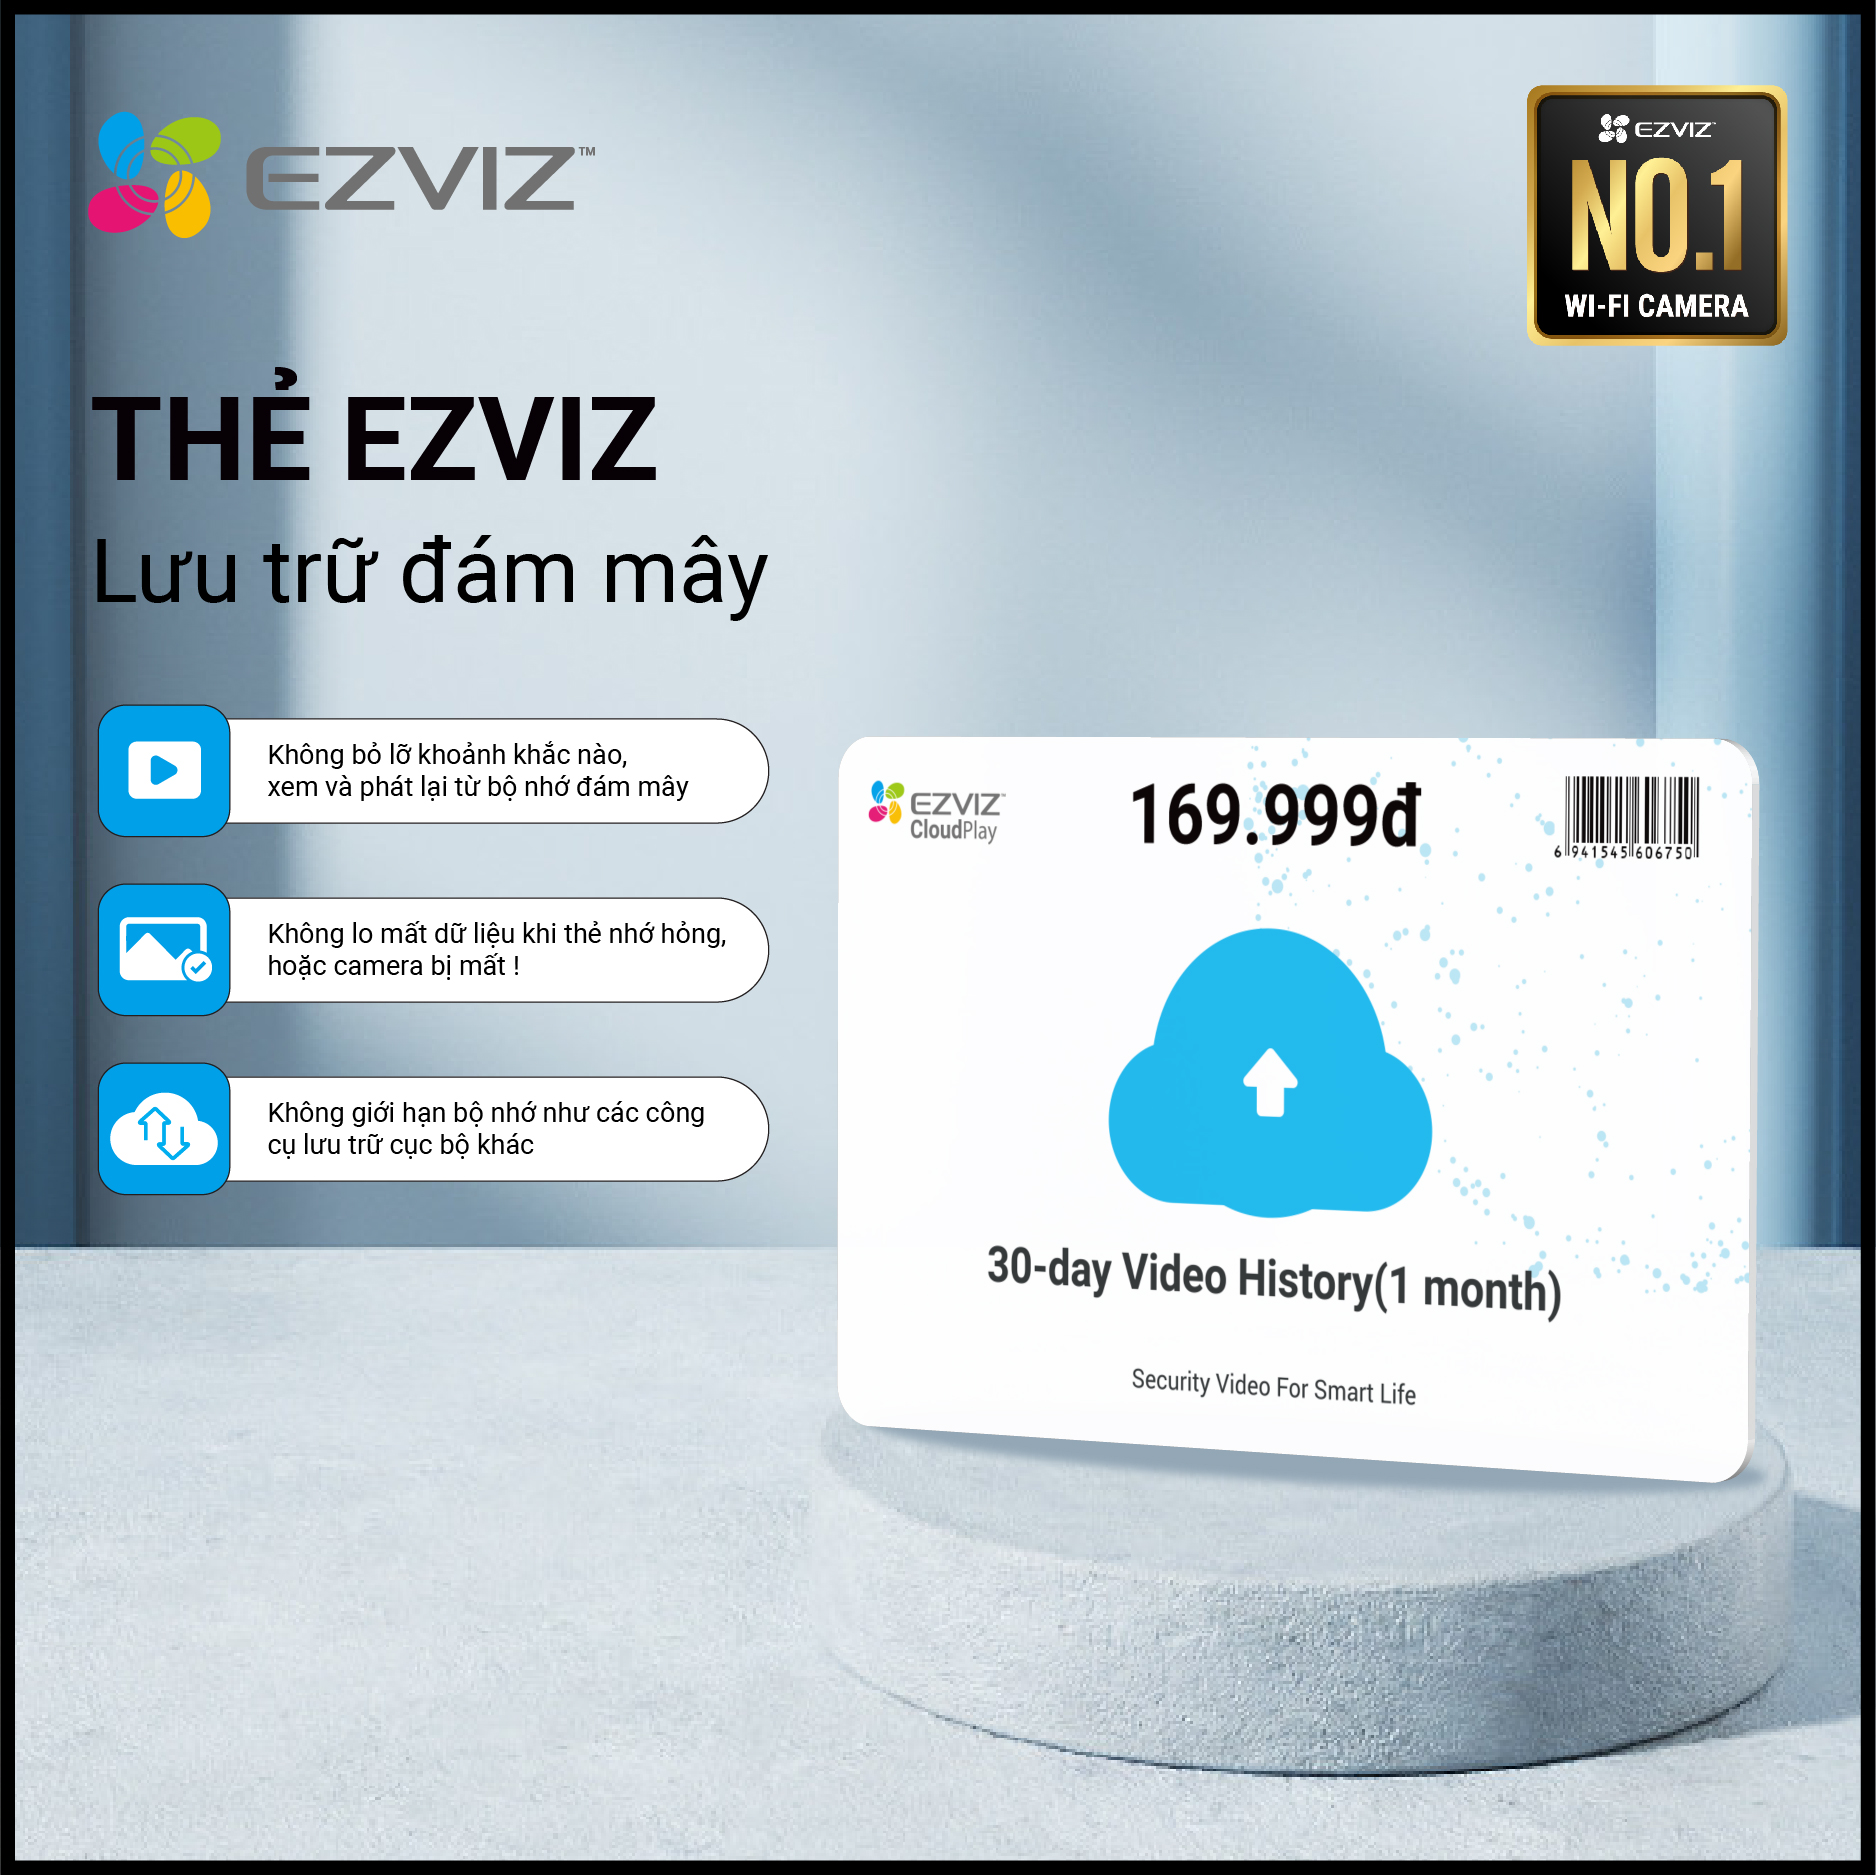 Gói EZVIZ CloudPlay 7 Ngày/30 Ngày, Bảo Mật Cao, Mã Hóa Dữ Liệu Bộ Nhớ,  Không Bỏ Lỡ Khoảnh Khắc Nào, Không Lo Mất Dữ Liệu Khi Thẻ Nhớ Hỏng Hay  Camera